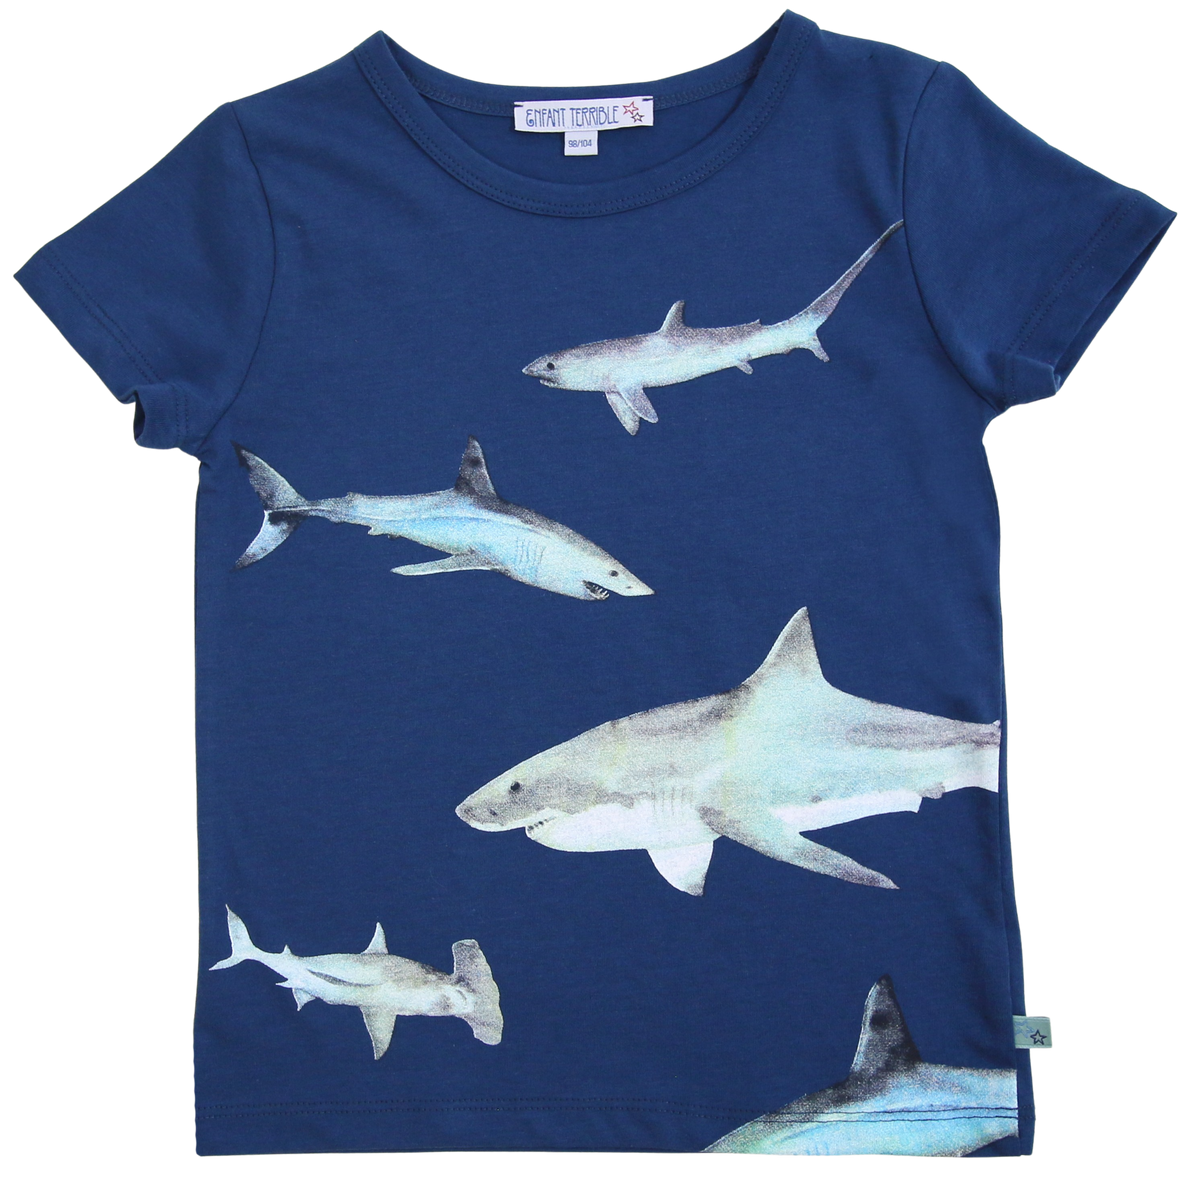 T-Shirt mit Haifische in dunkelblau (1-2 Jahre) Enfant Terrible